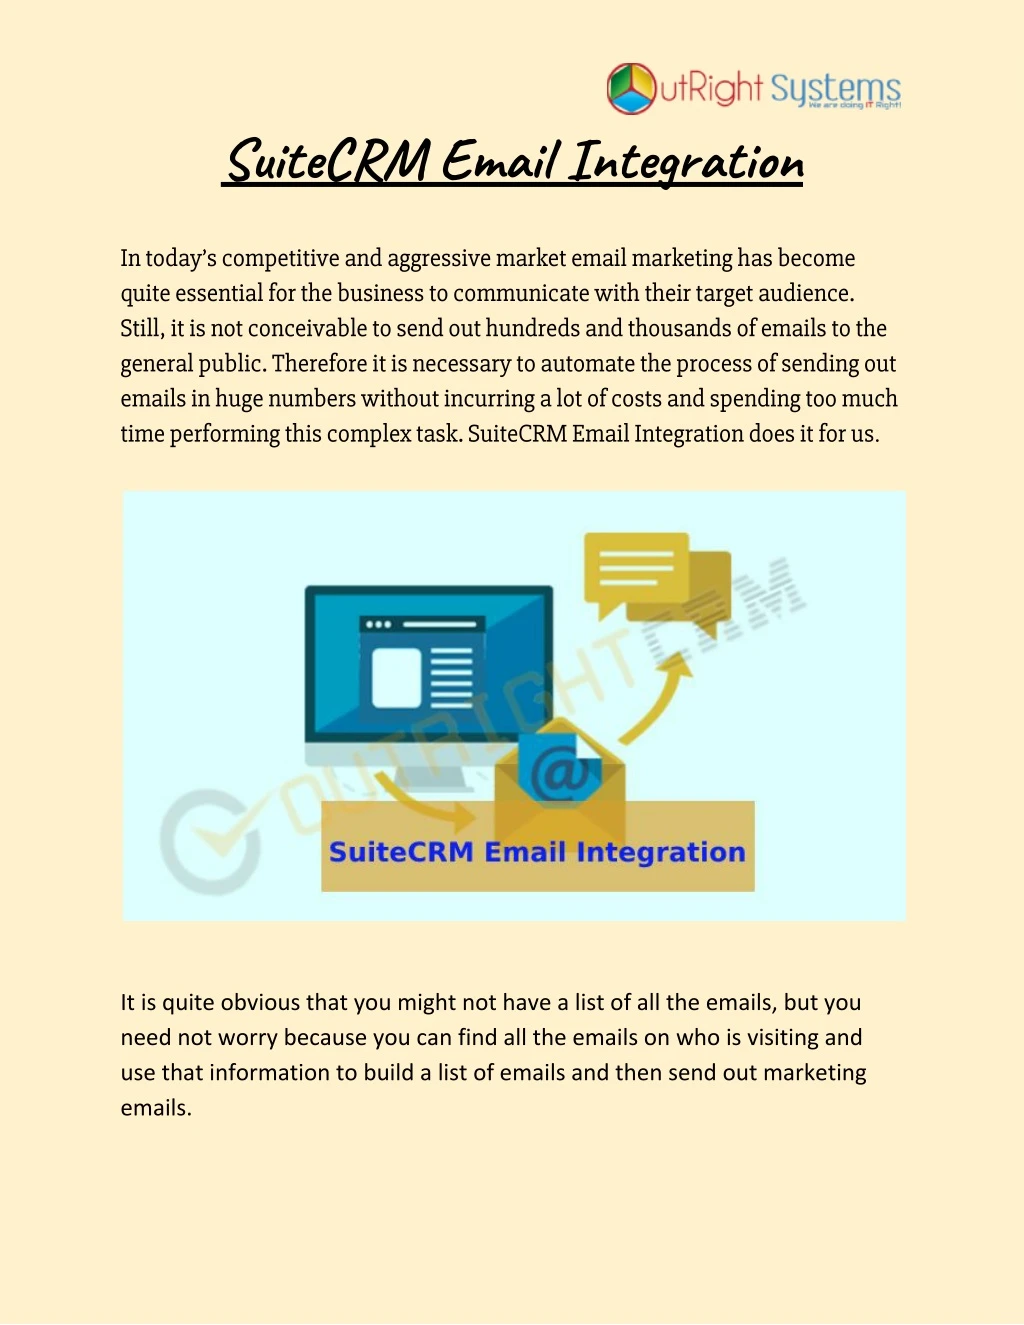 suitecrm email integration